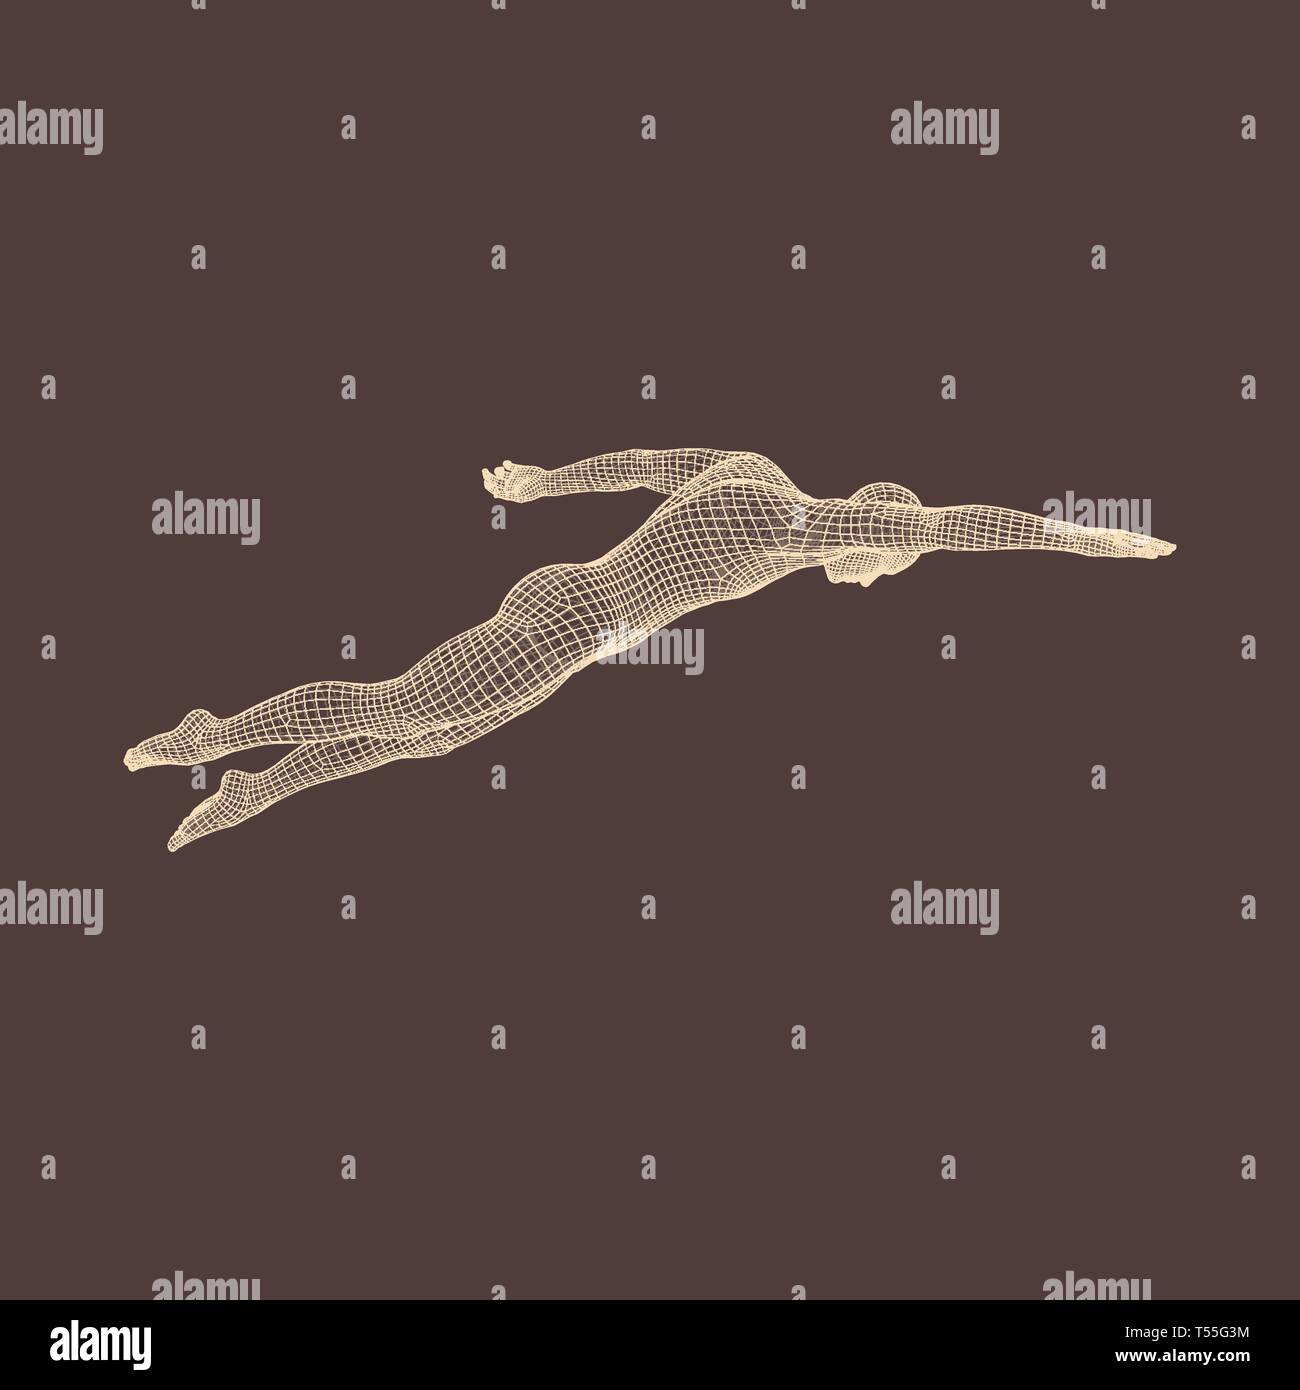 Piscine 3D L'homme. Image vectorielle d'un nageur. Corps humain. Symbole du sport. L'élément de conception. Illustration de Vecteur